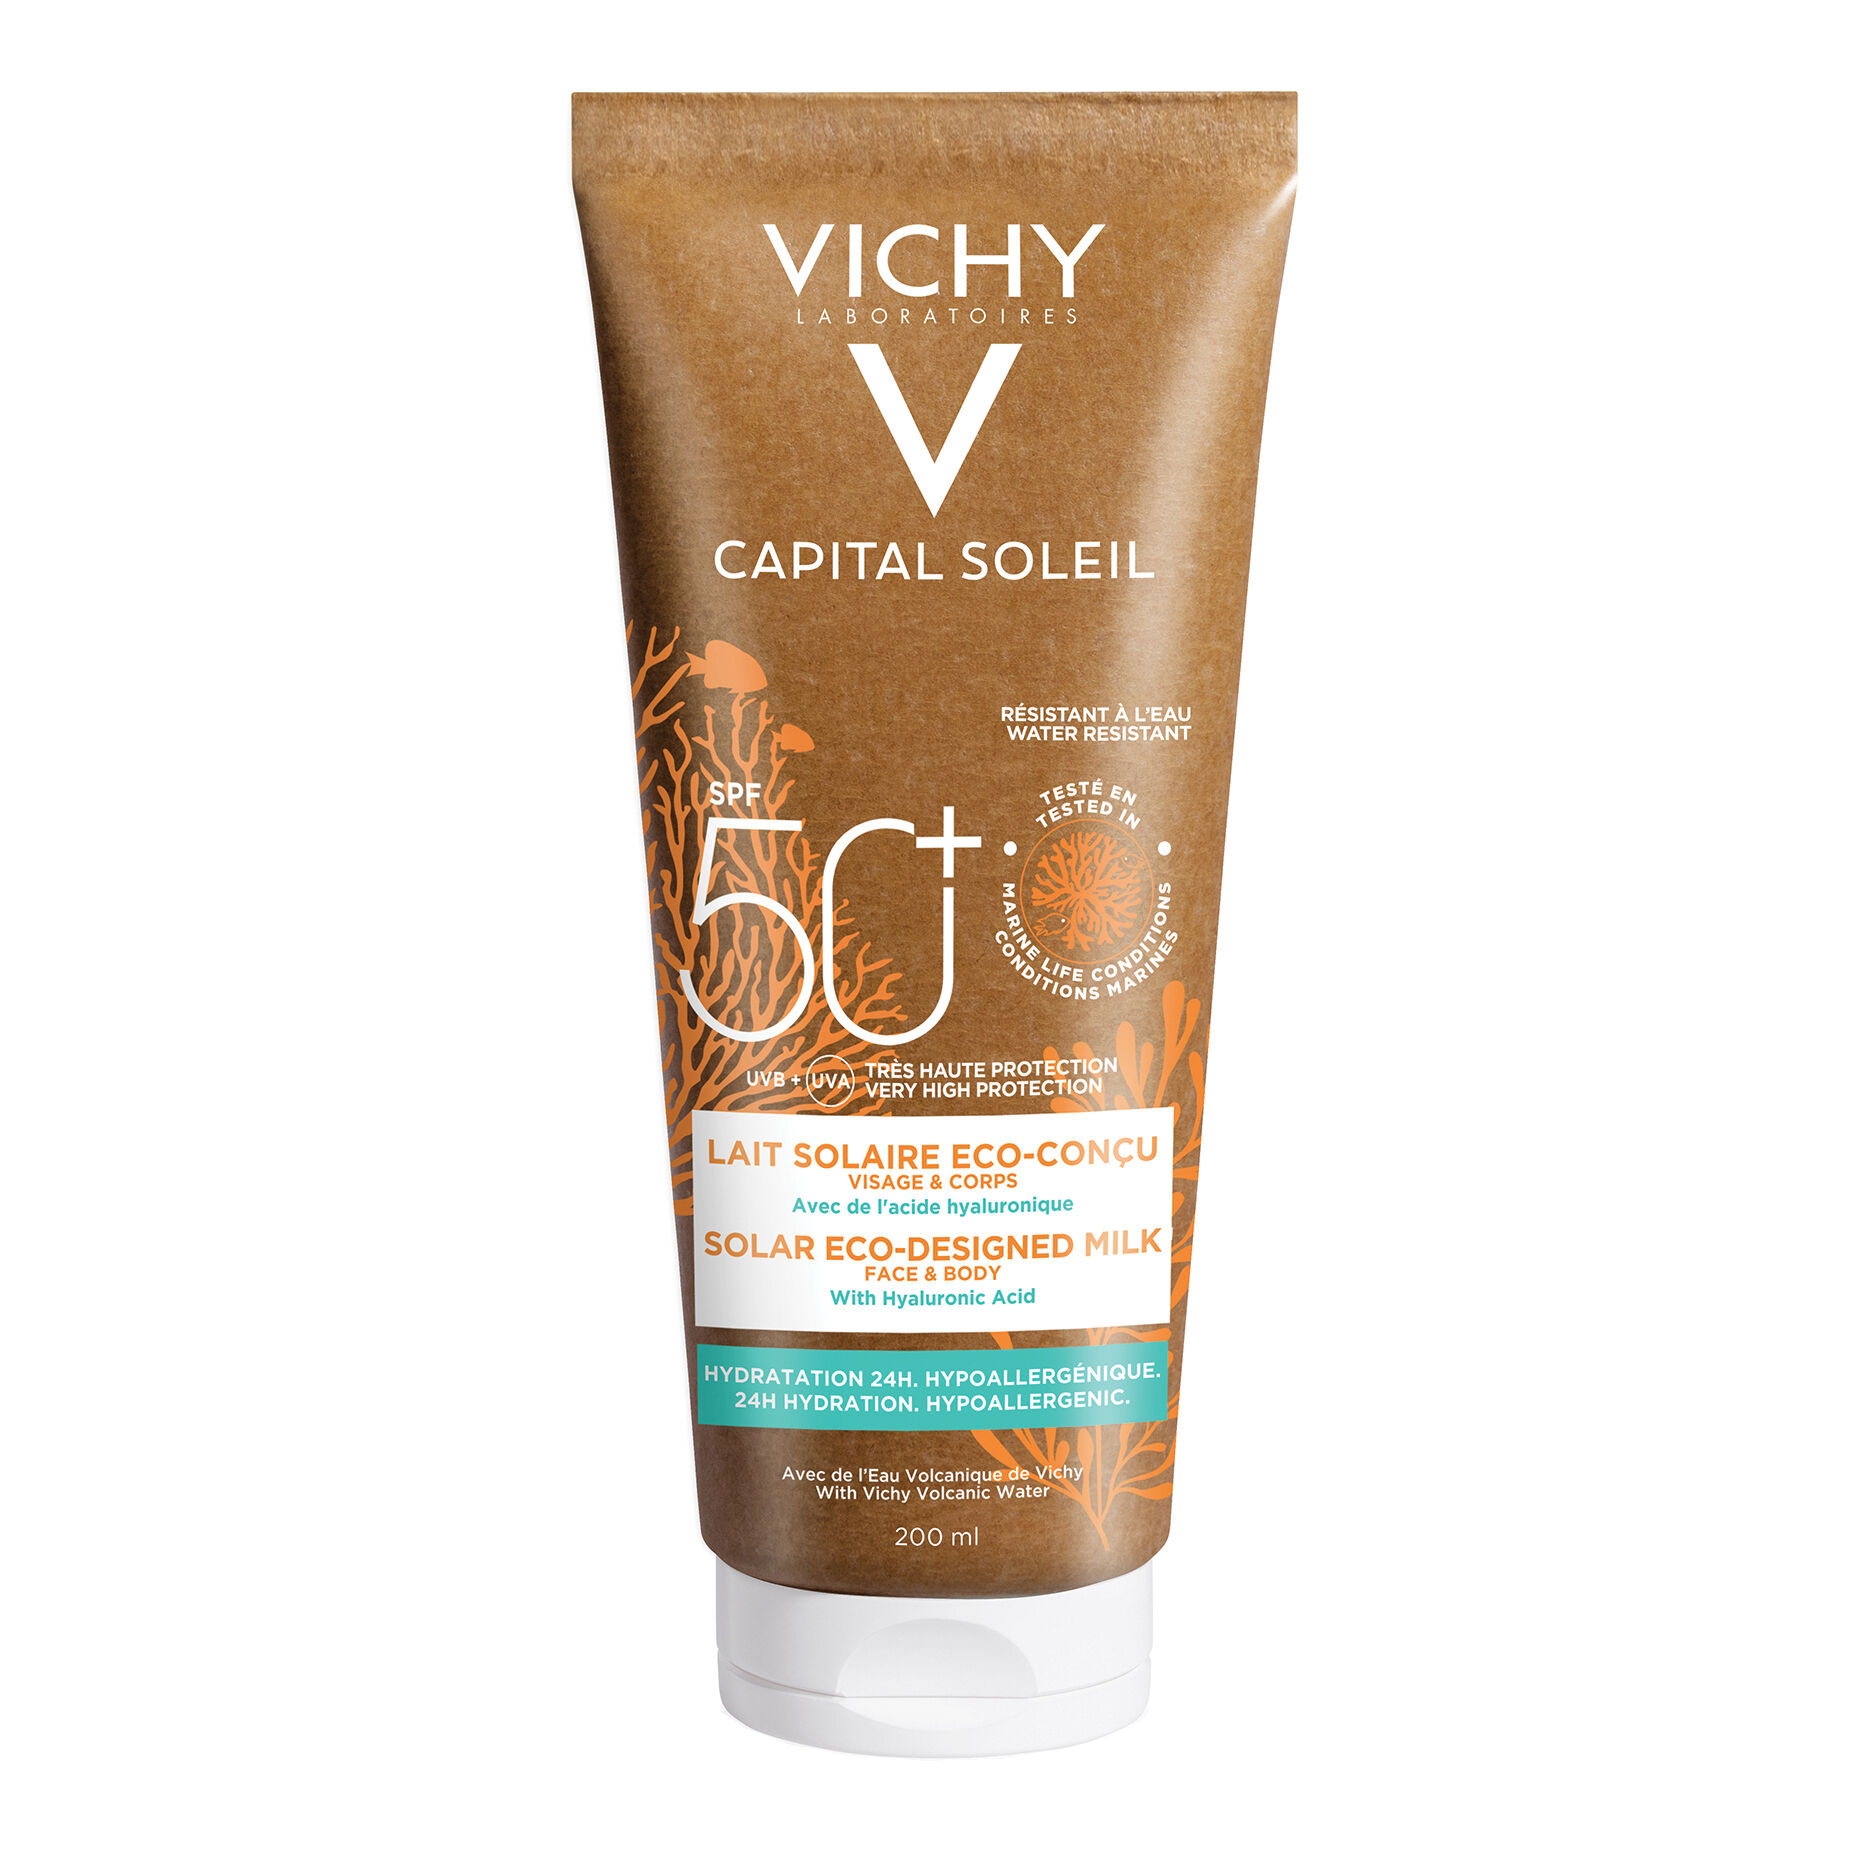 Vichy Capital soleil latte solare eco-sostenibile spf50+ 200 ml